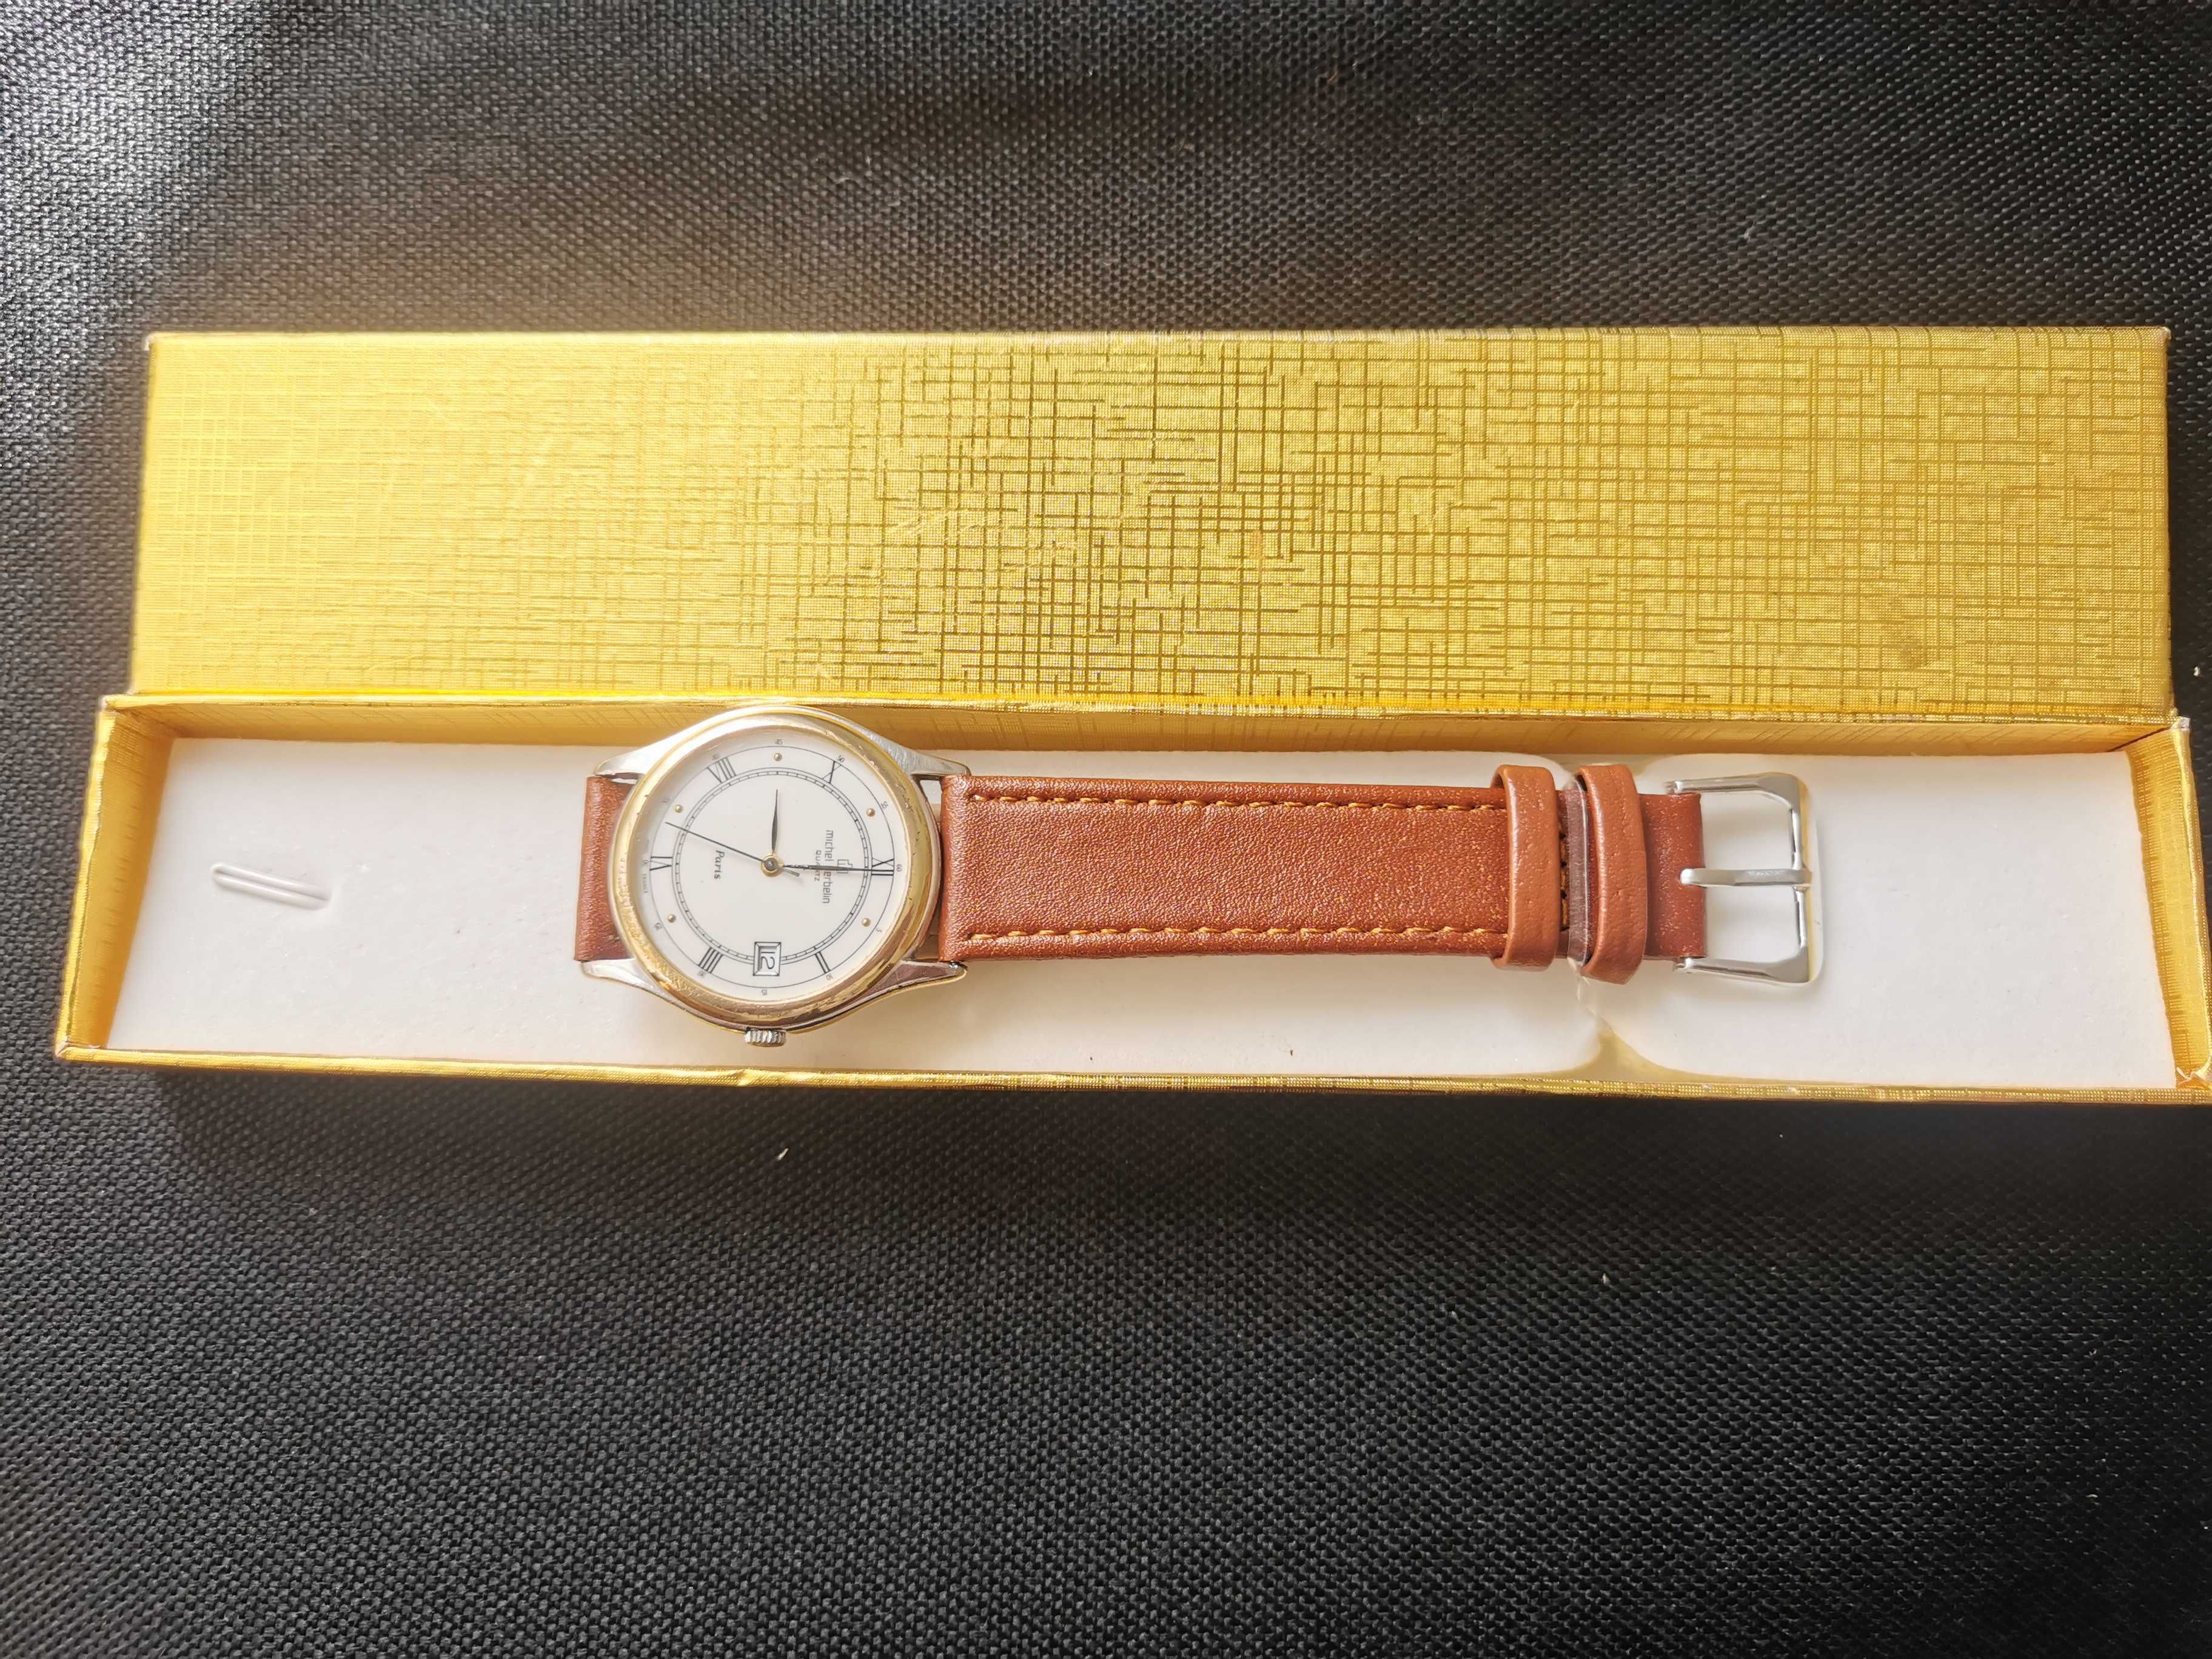 Relógio Michel Herbelin, Paris nº 9413 em ouro